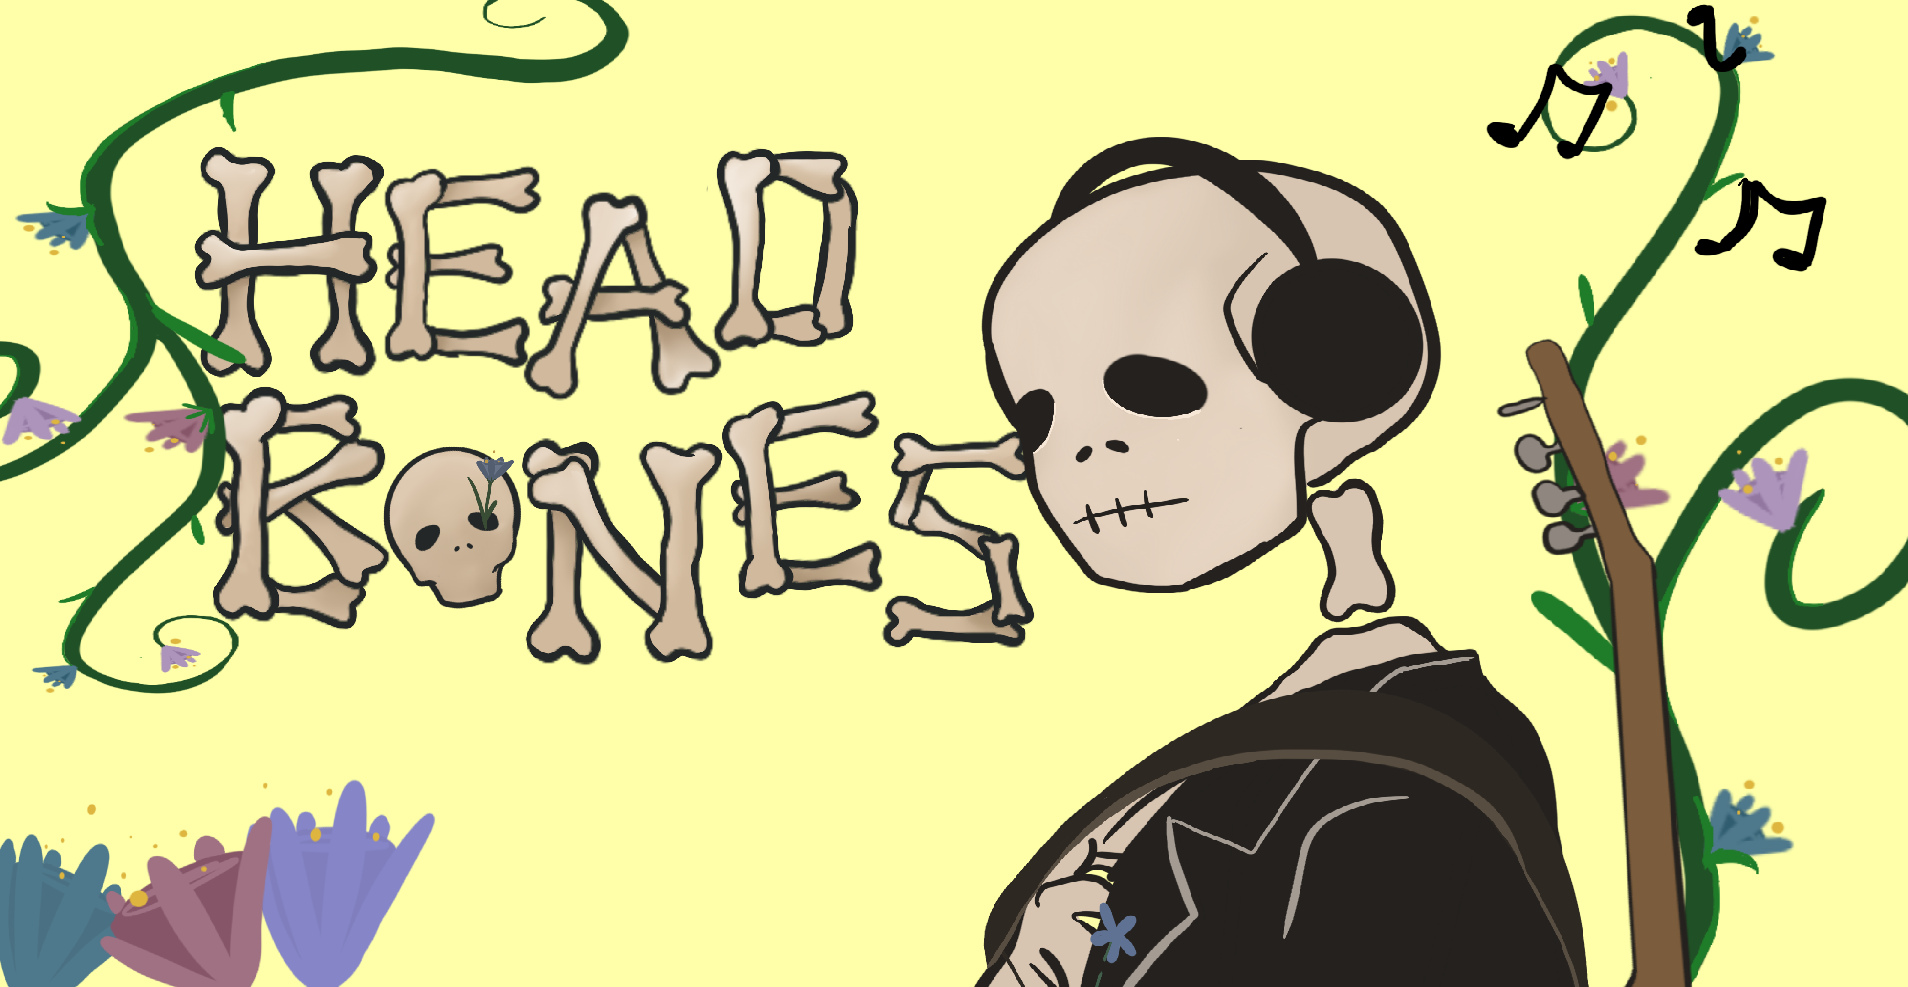 Headbones